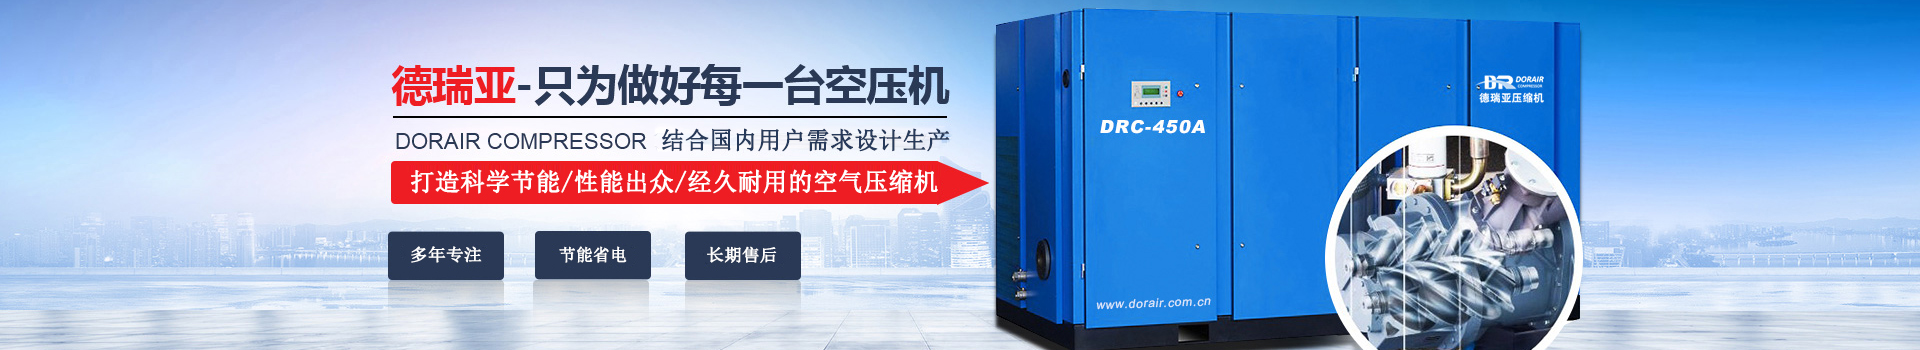 德瑞亞空壓機，中國高品質空壓機倡導者